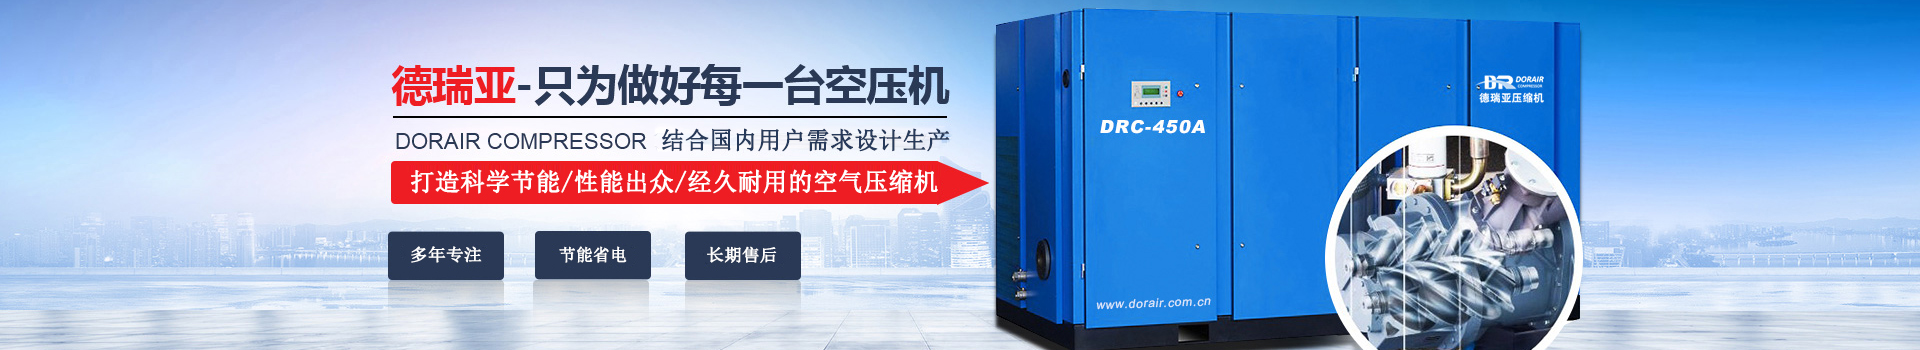 德瑞亞空壓機，中國高品質空壓機倡導者